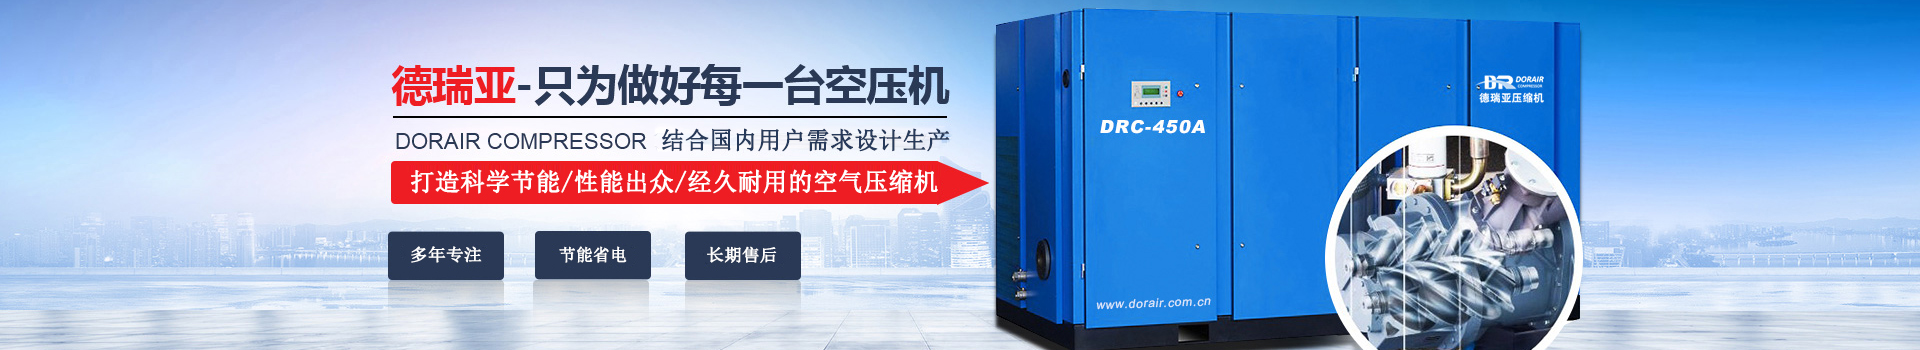 德瑞亞空壓機，中國高品質空壓機倡導者